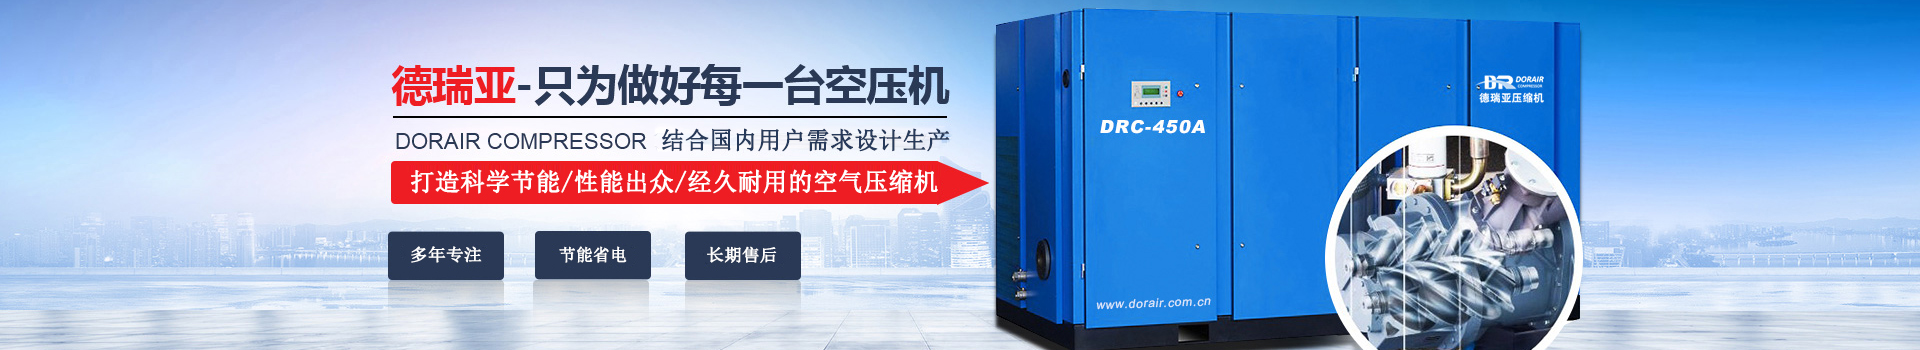 德瑞亞空壓機，中國高品質空壓機倡導者